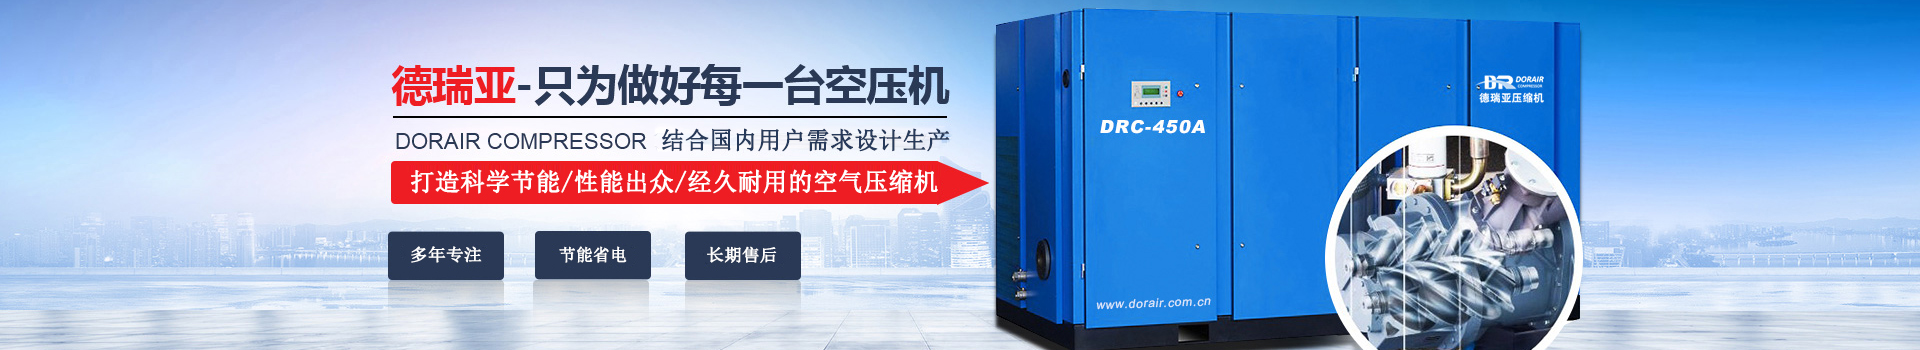 德瑞亞空壓機，中國高品質空壓機倡導者